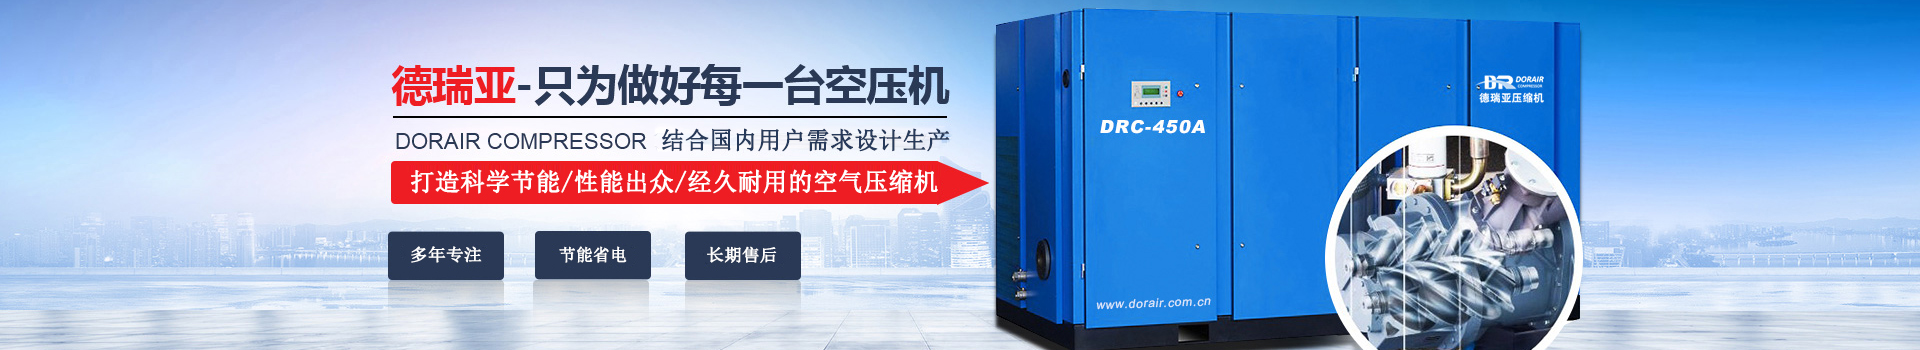 德瑞亞空壓機，中國高品質空壓機倡導者